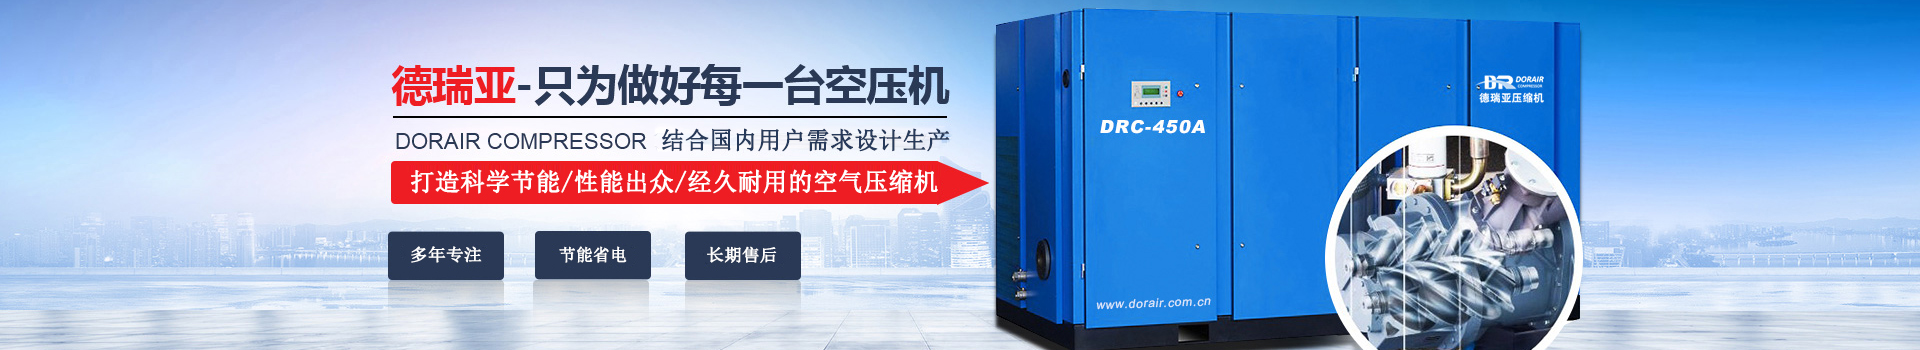 德瑞亞空壓機，中國高品質空壓機倡導者